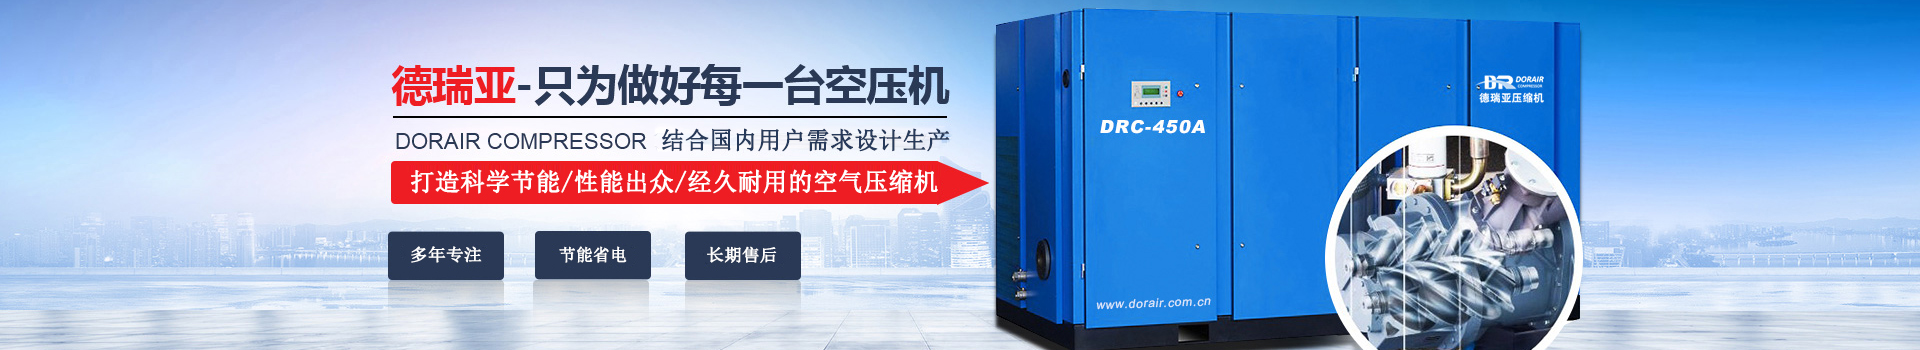 德瑞亞空壓機，中國高品質空壓機倡導者